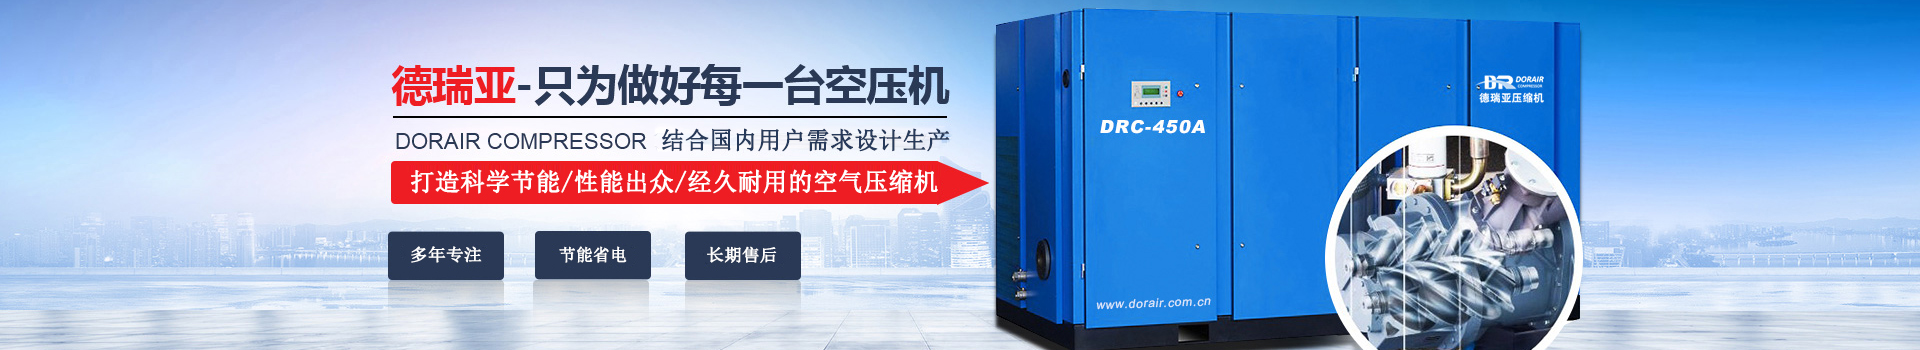 德瑞亞空壓機，中國高品質空壓機倡導者